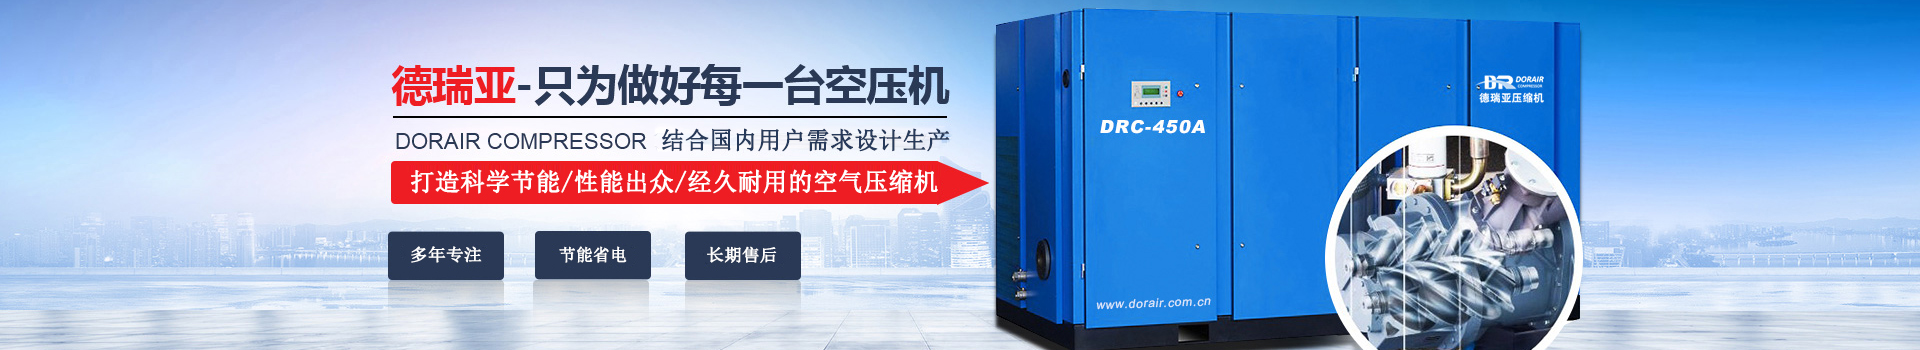 德瑞亞空壓機，中國高品質空壓機倡導者